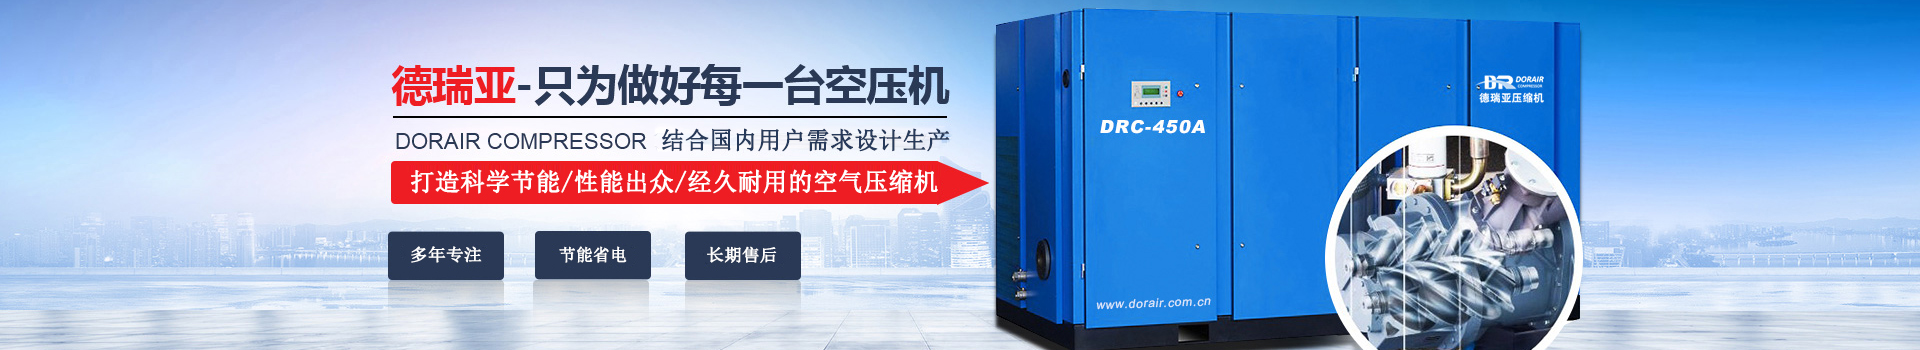 德瑞亞空壓機，中國高品質空壓機倡導者